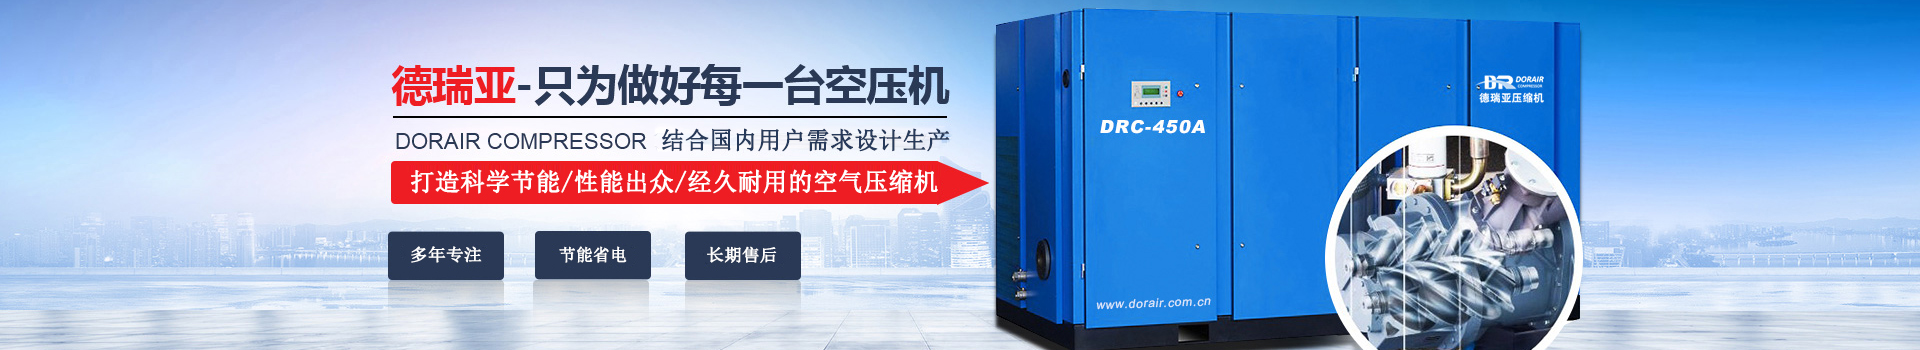 德瑞亞空壓機，中國高品質空壓機倡導者